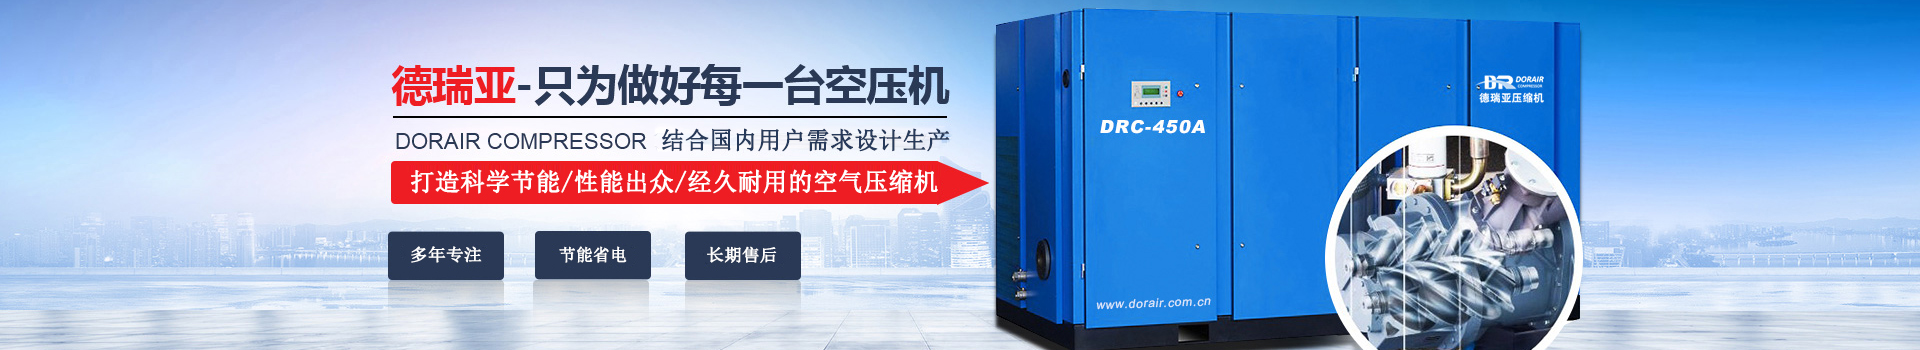 德瑞亞空壓機，中國高品質空壓機倡導者